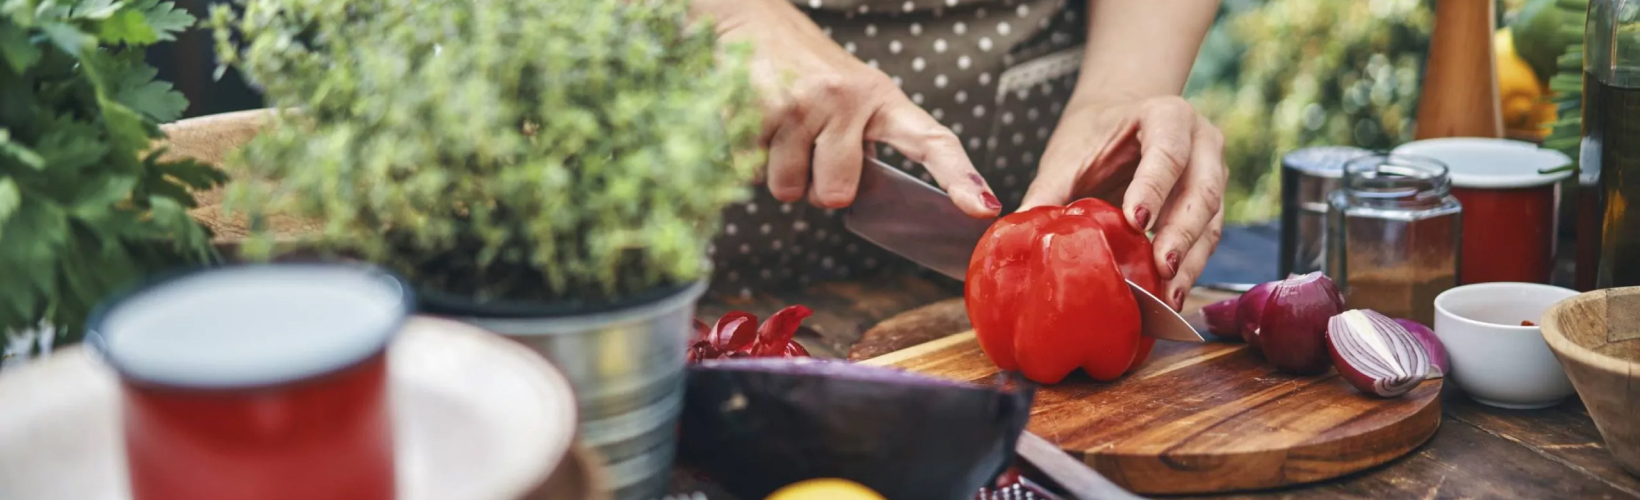 Eine Frau schneidet Paprika. Wissenswertes aus der mediterranen Küche